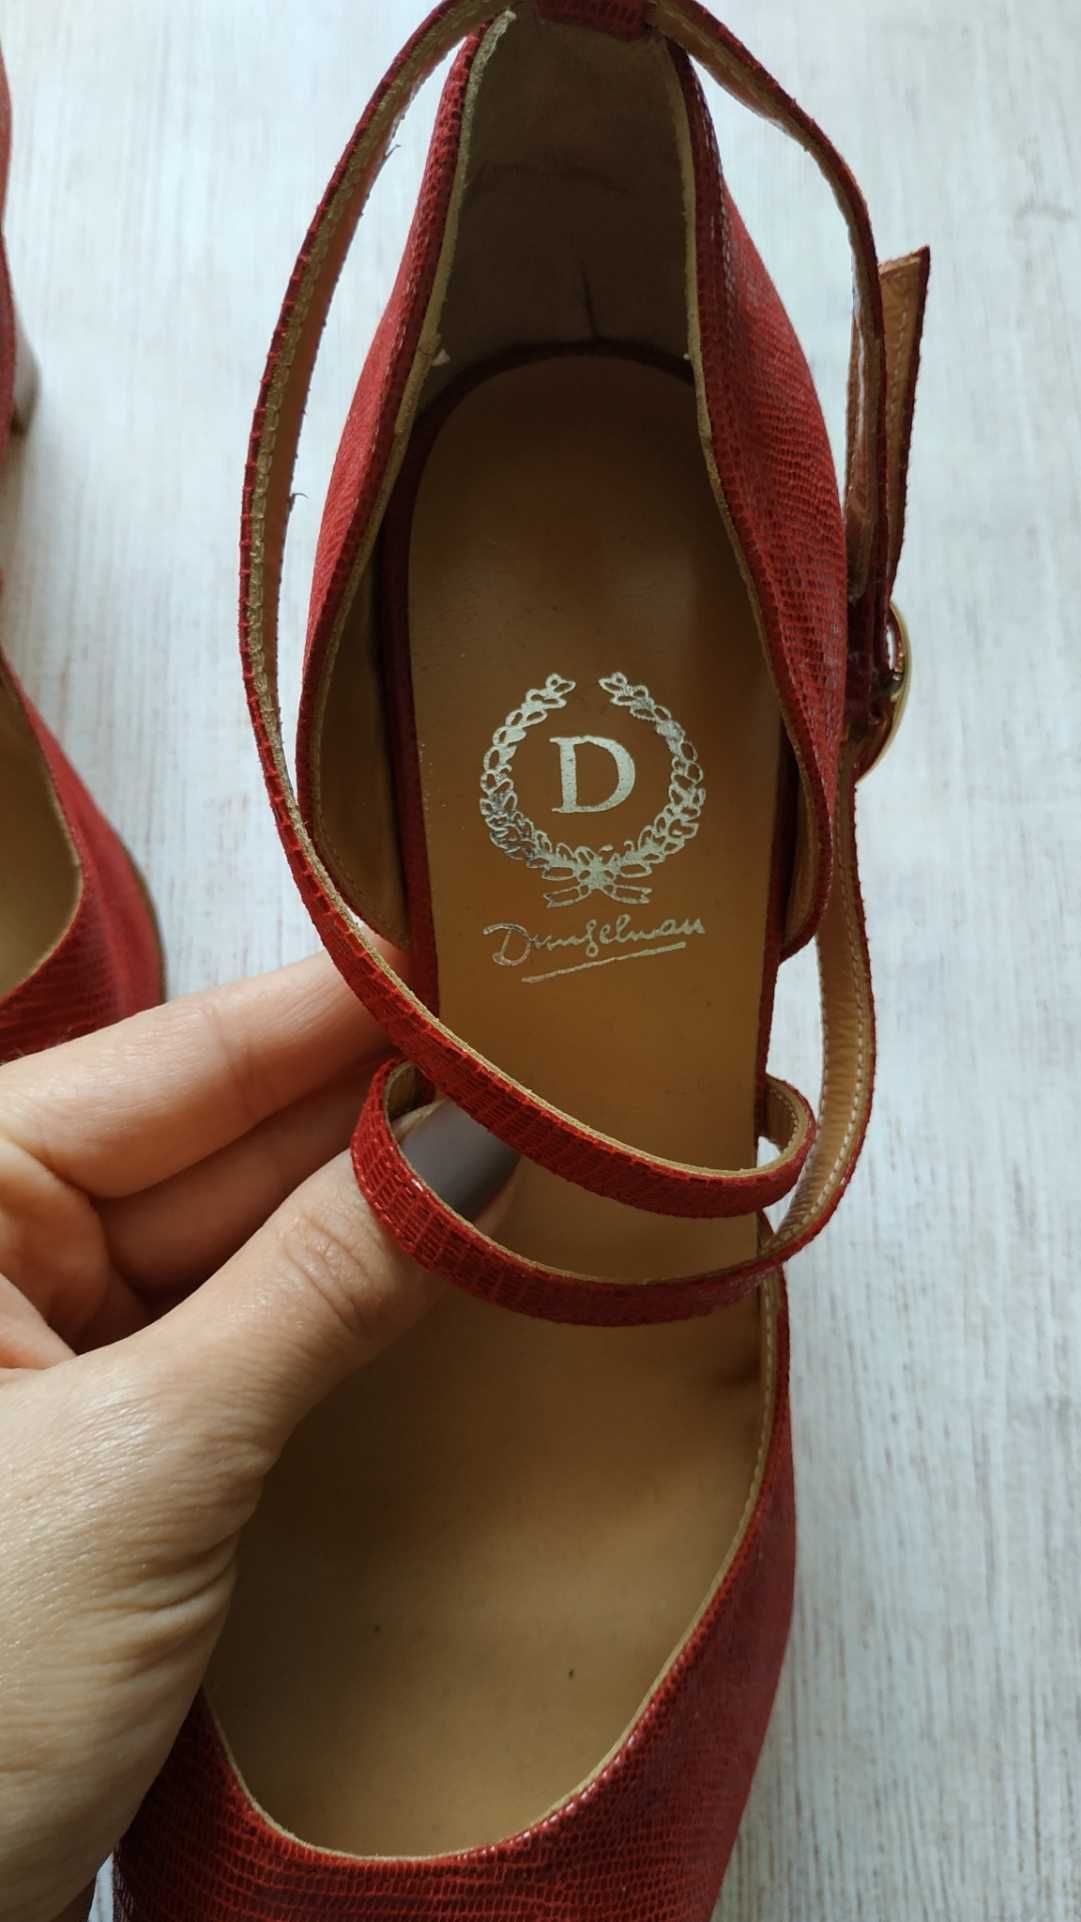 Dungelmann червоні шкіряні босоніжки туфлі з ремінцями зміїїний принт